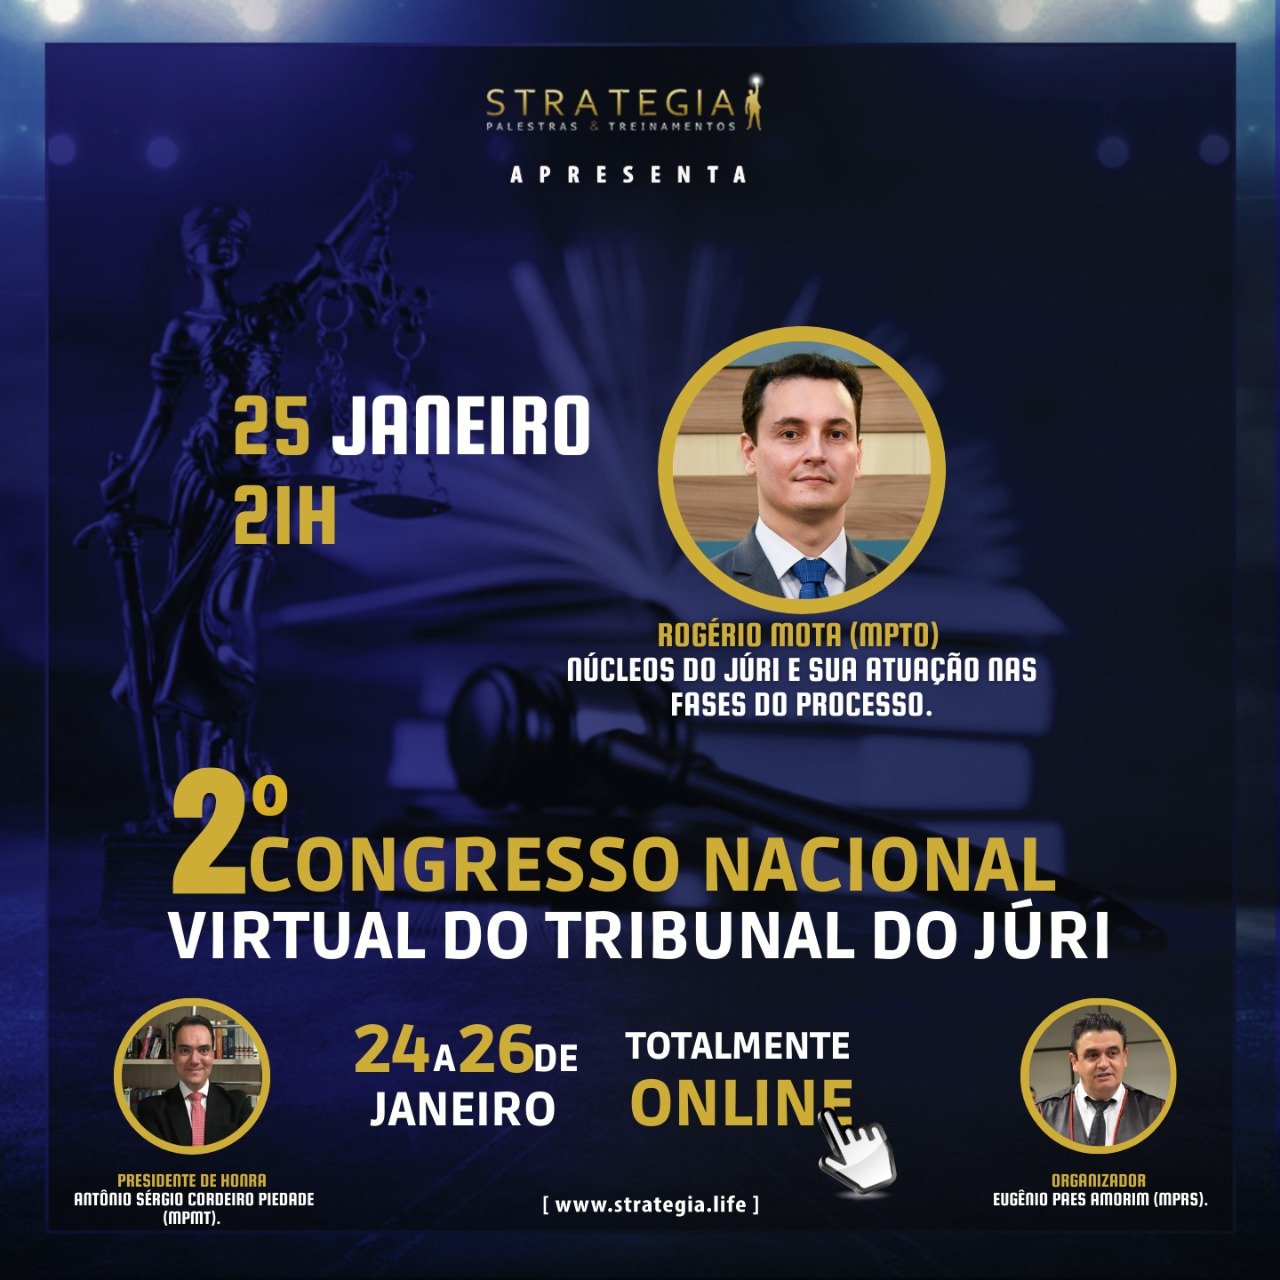 2 Congresso Nacional Virtual do Tribunal do Júri